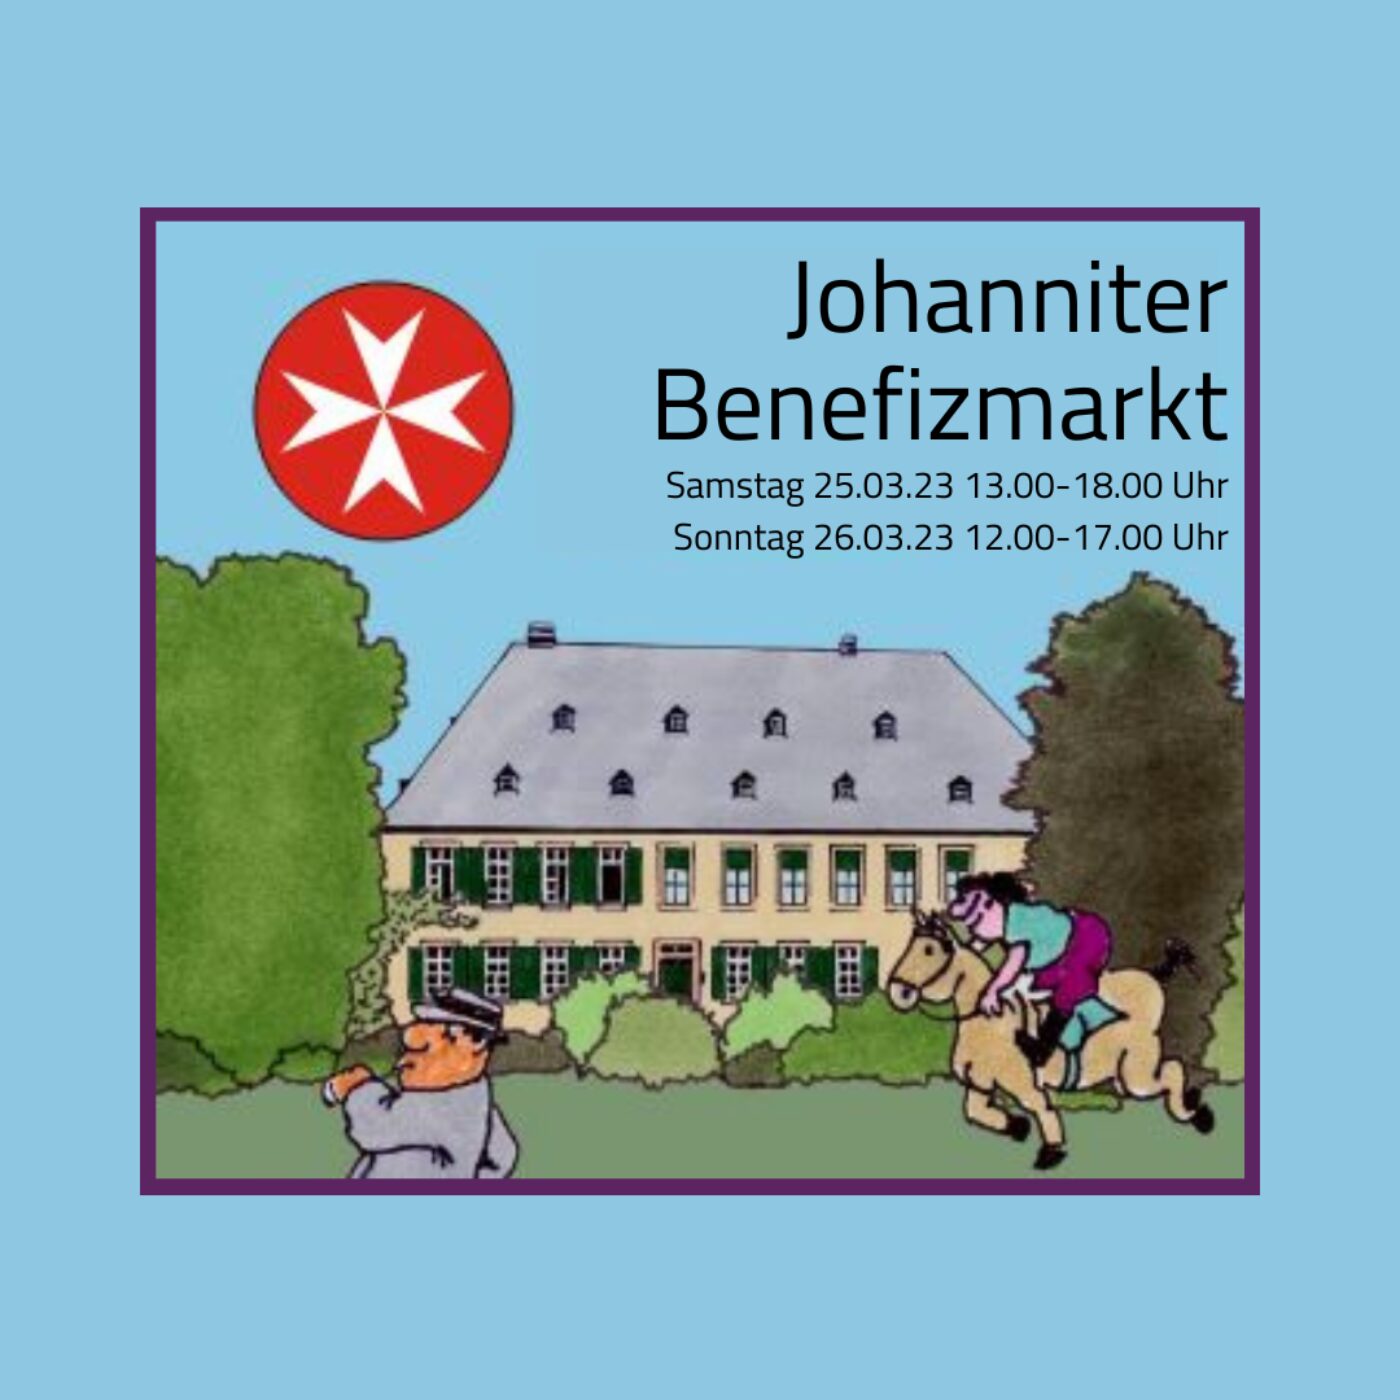 Johanniter Benefizmarkt"